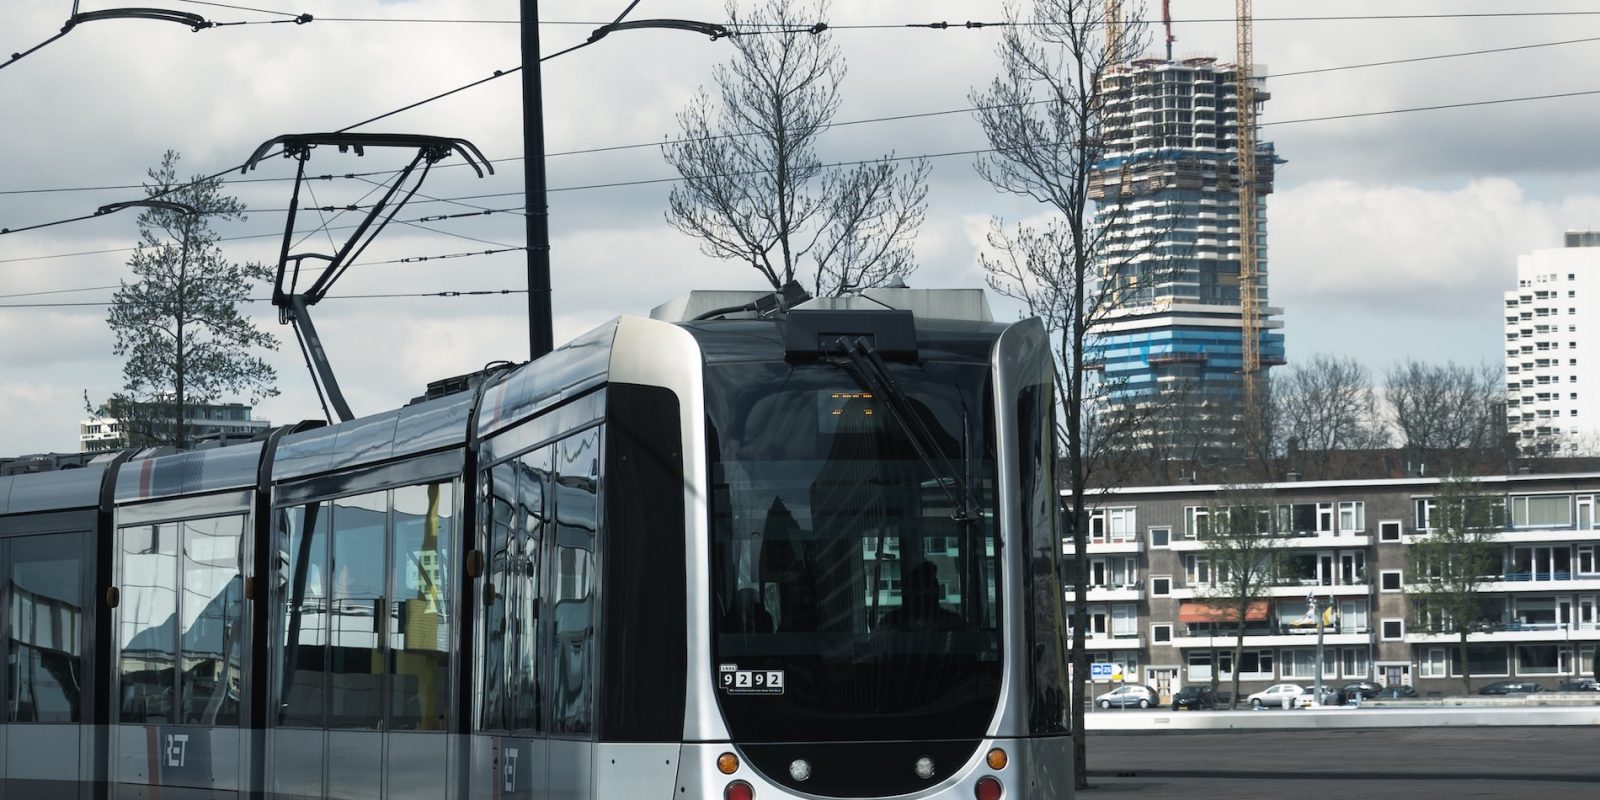 ‘Energiebank’ als innovatieve versterking energievoorziening Rotterdamse tram